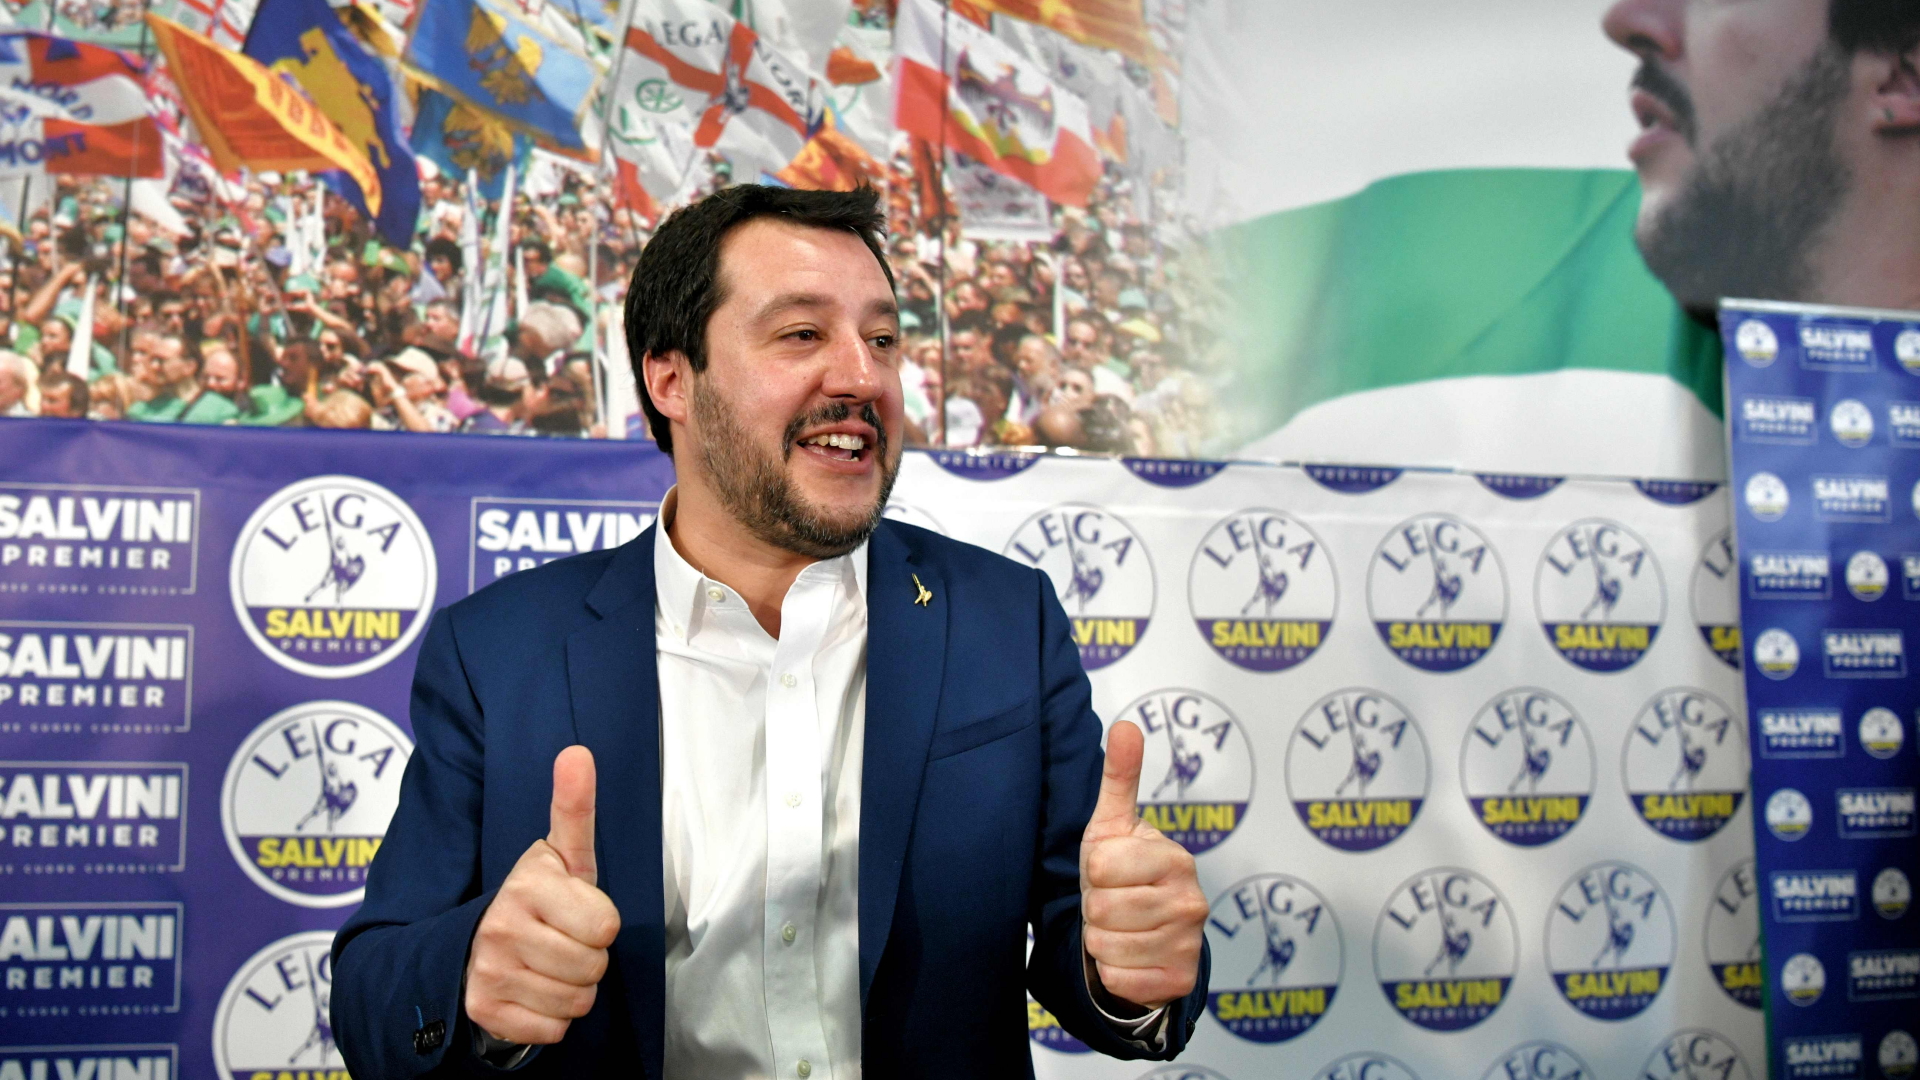 Daumen hoch: Matteo Salvini von der Lega Nord nach der Wahl.